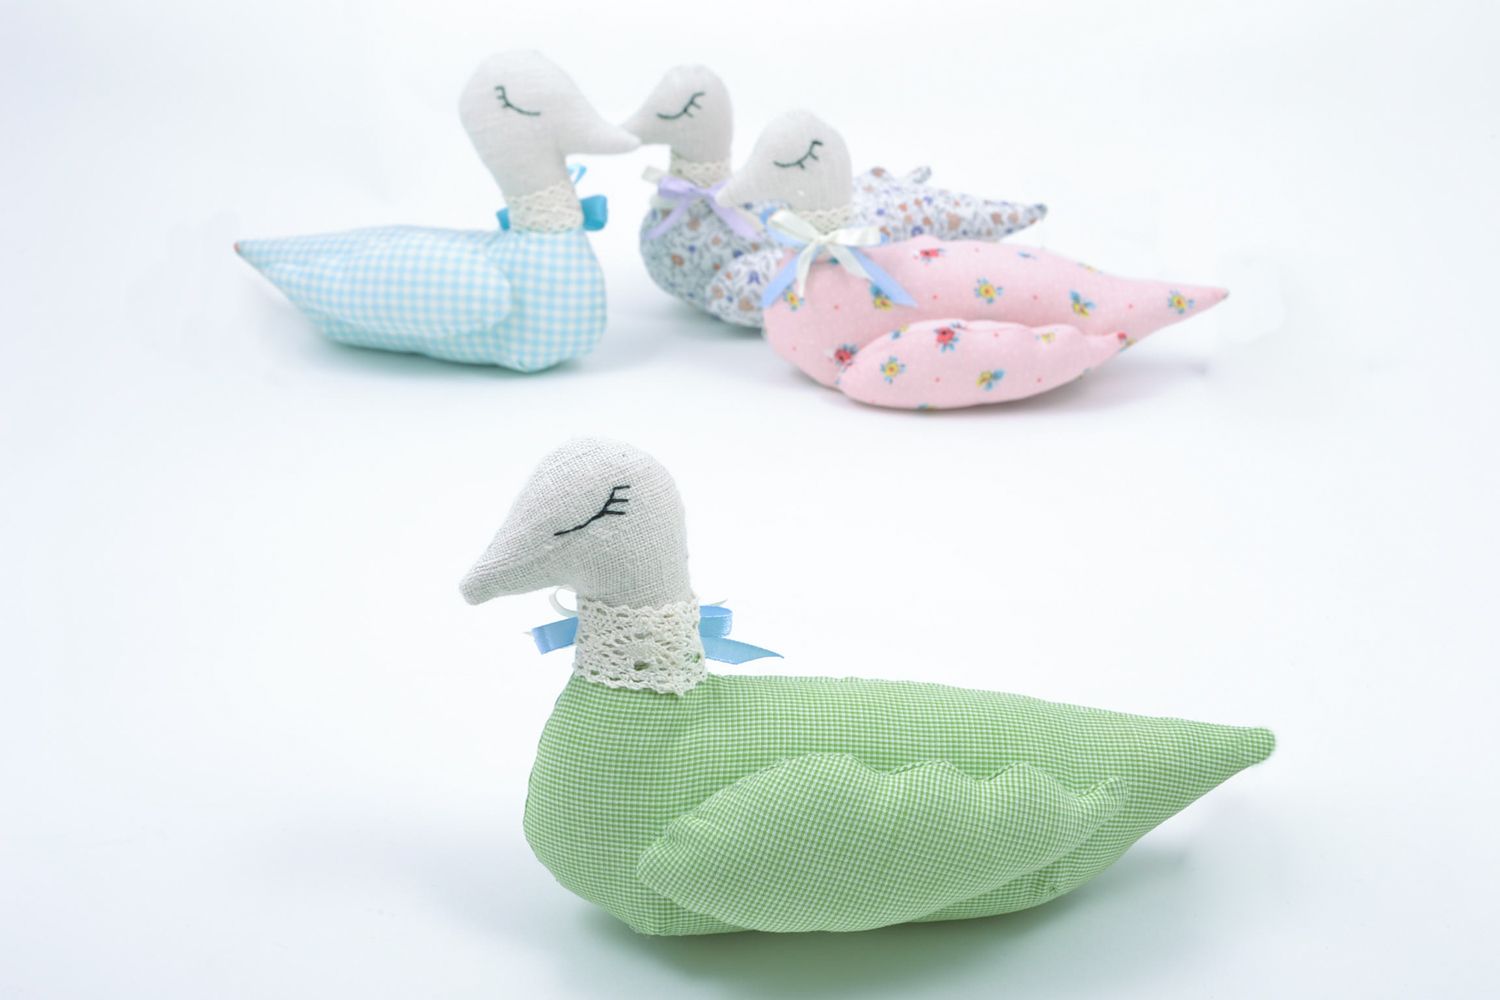 Textil Spielzeug Ente für Badezimmer foto 1